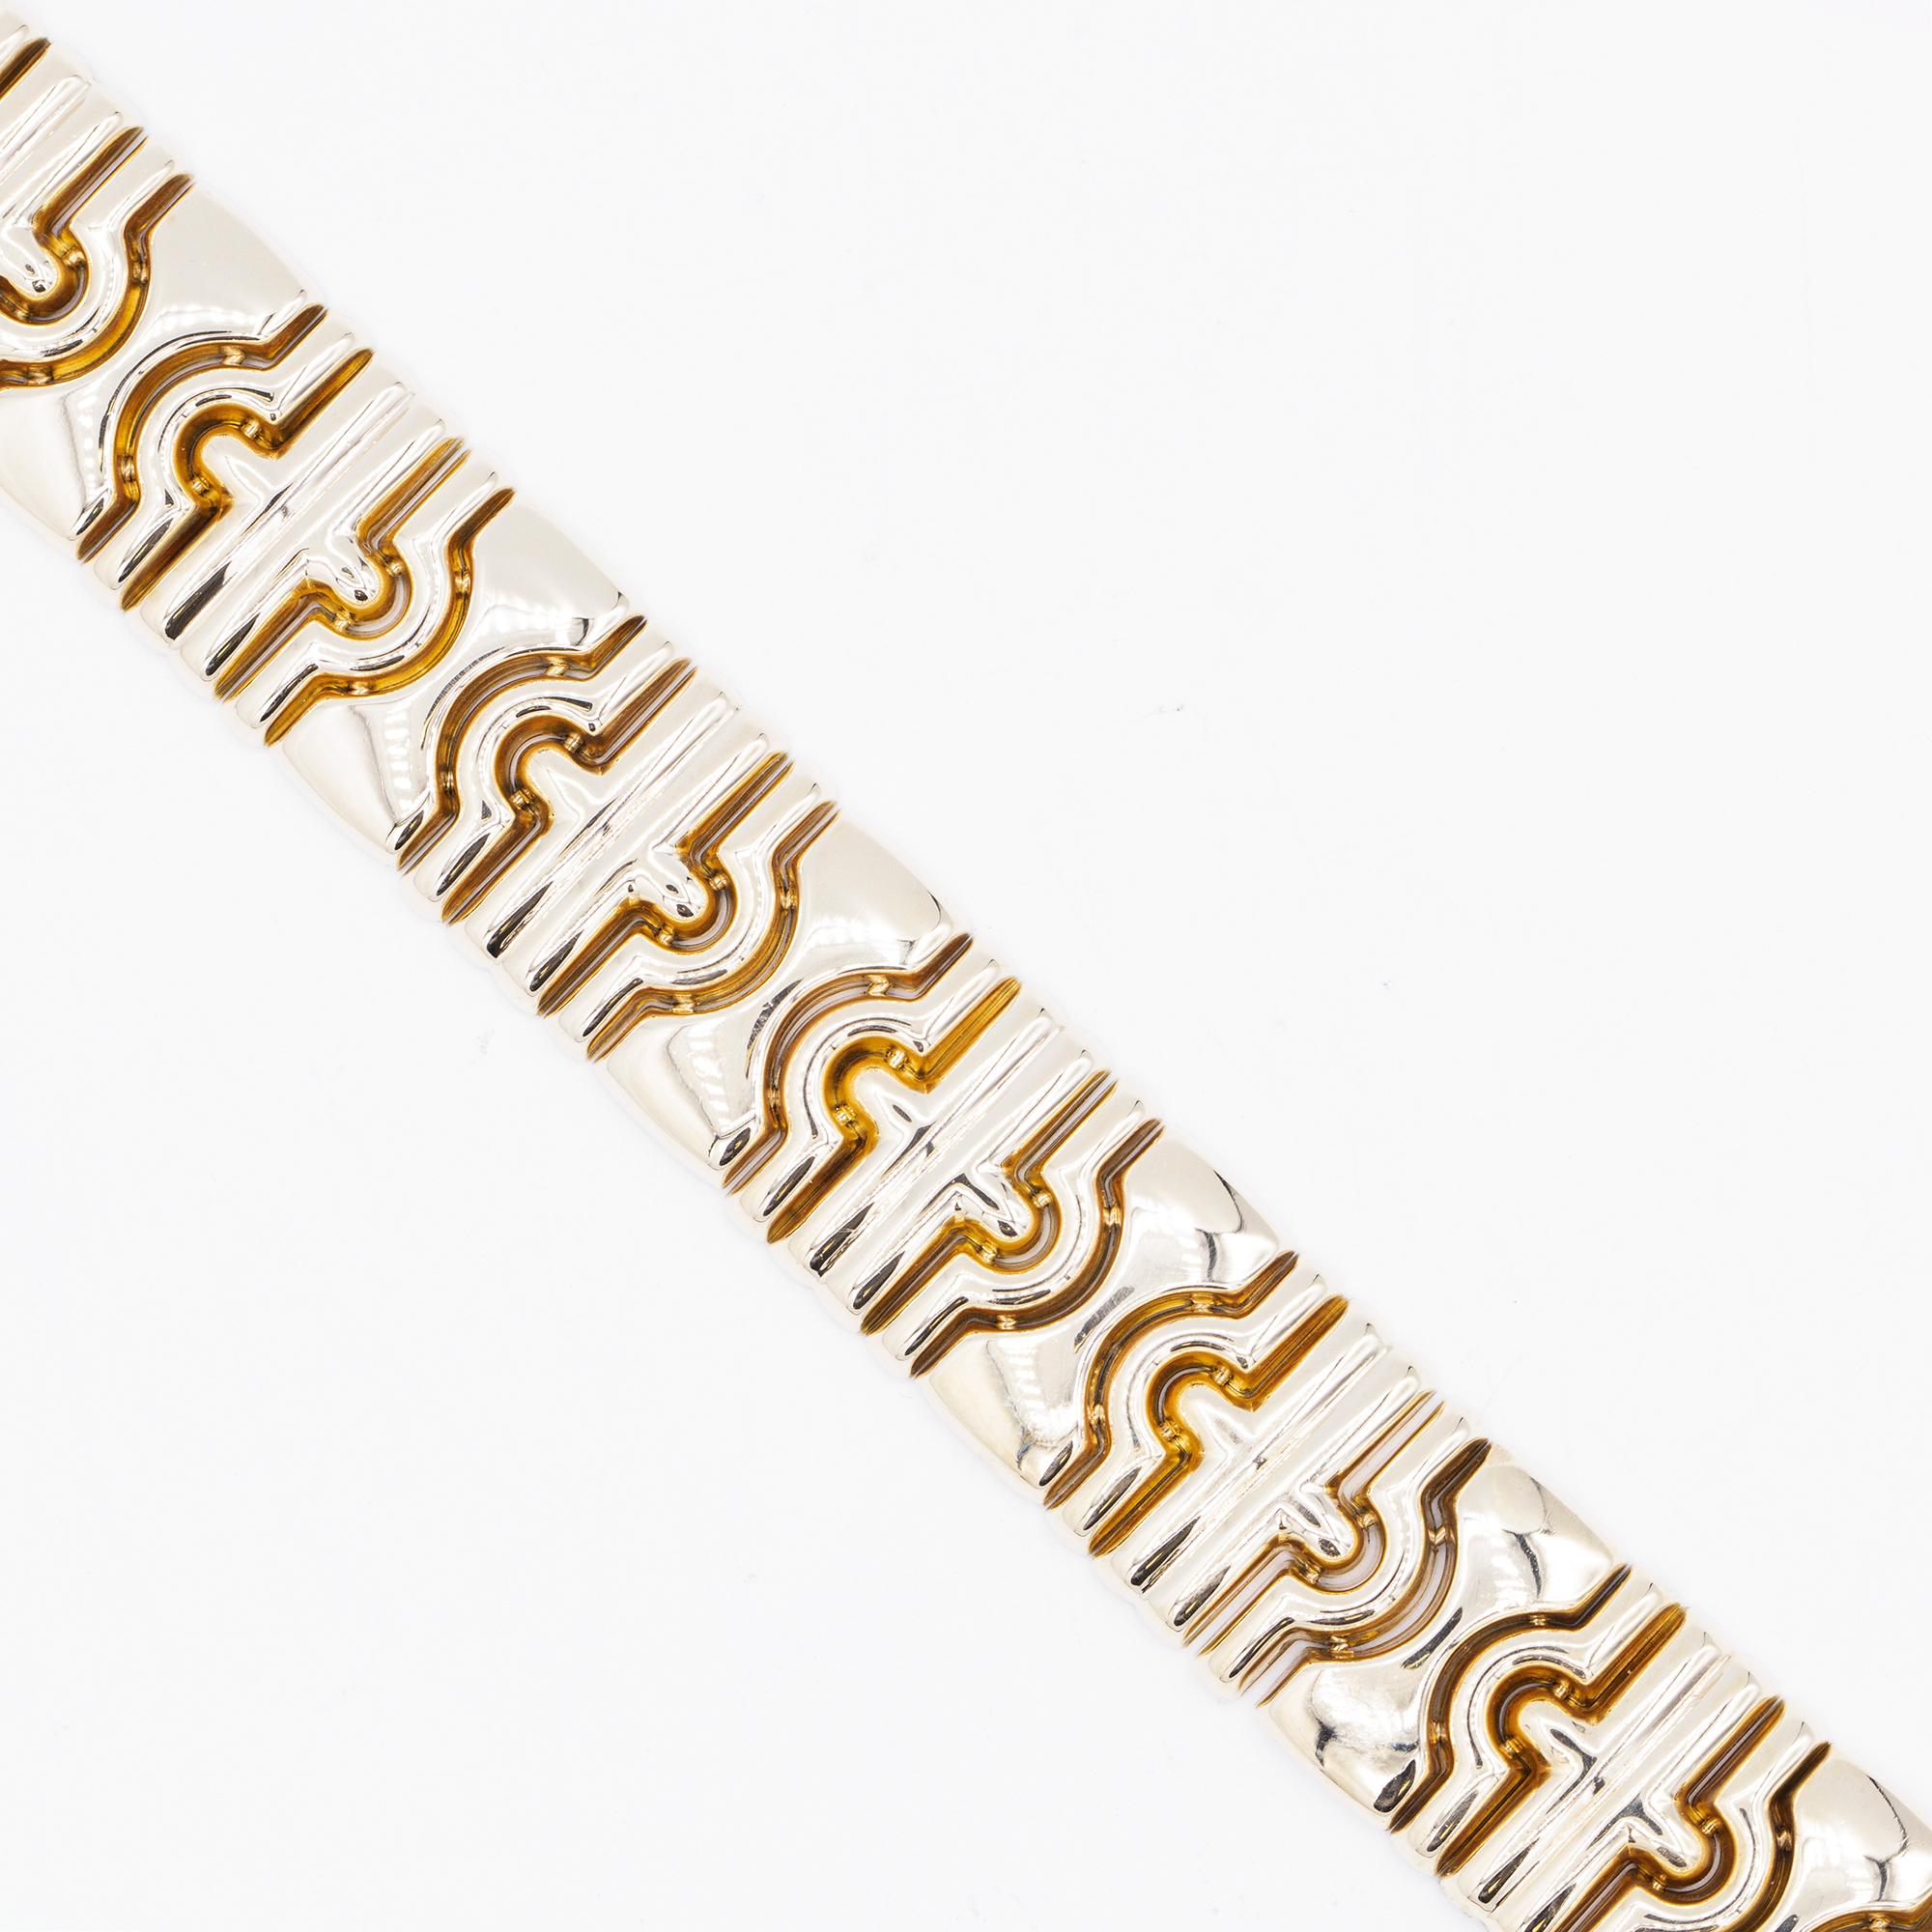 Bracelet de style Tubogas en or jaune 14 carats, grand format. Le bracelet mesure 7,25 pouces de long et pèse 43,5 grammes.